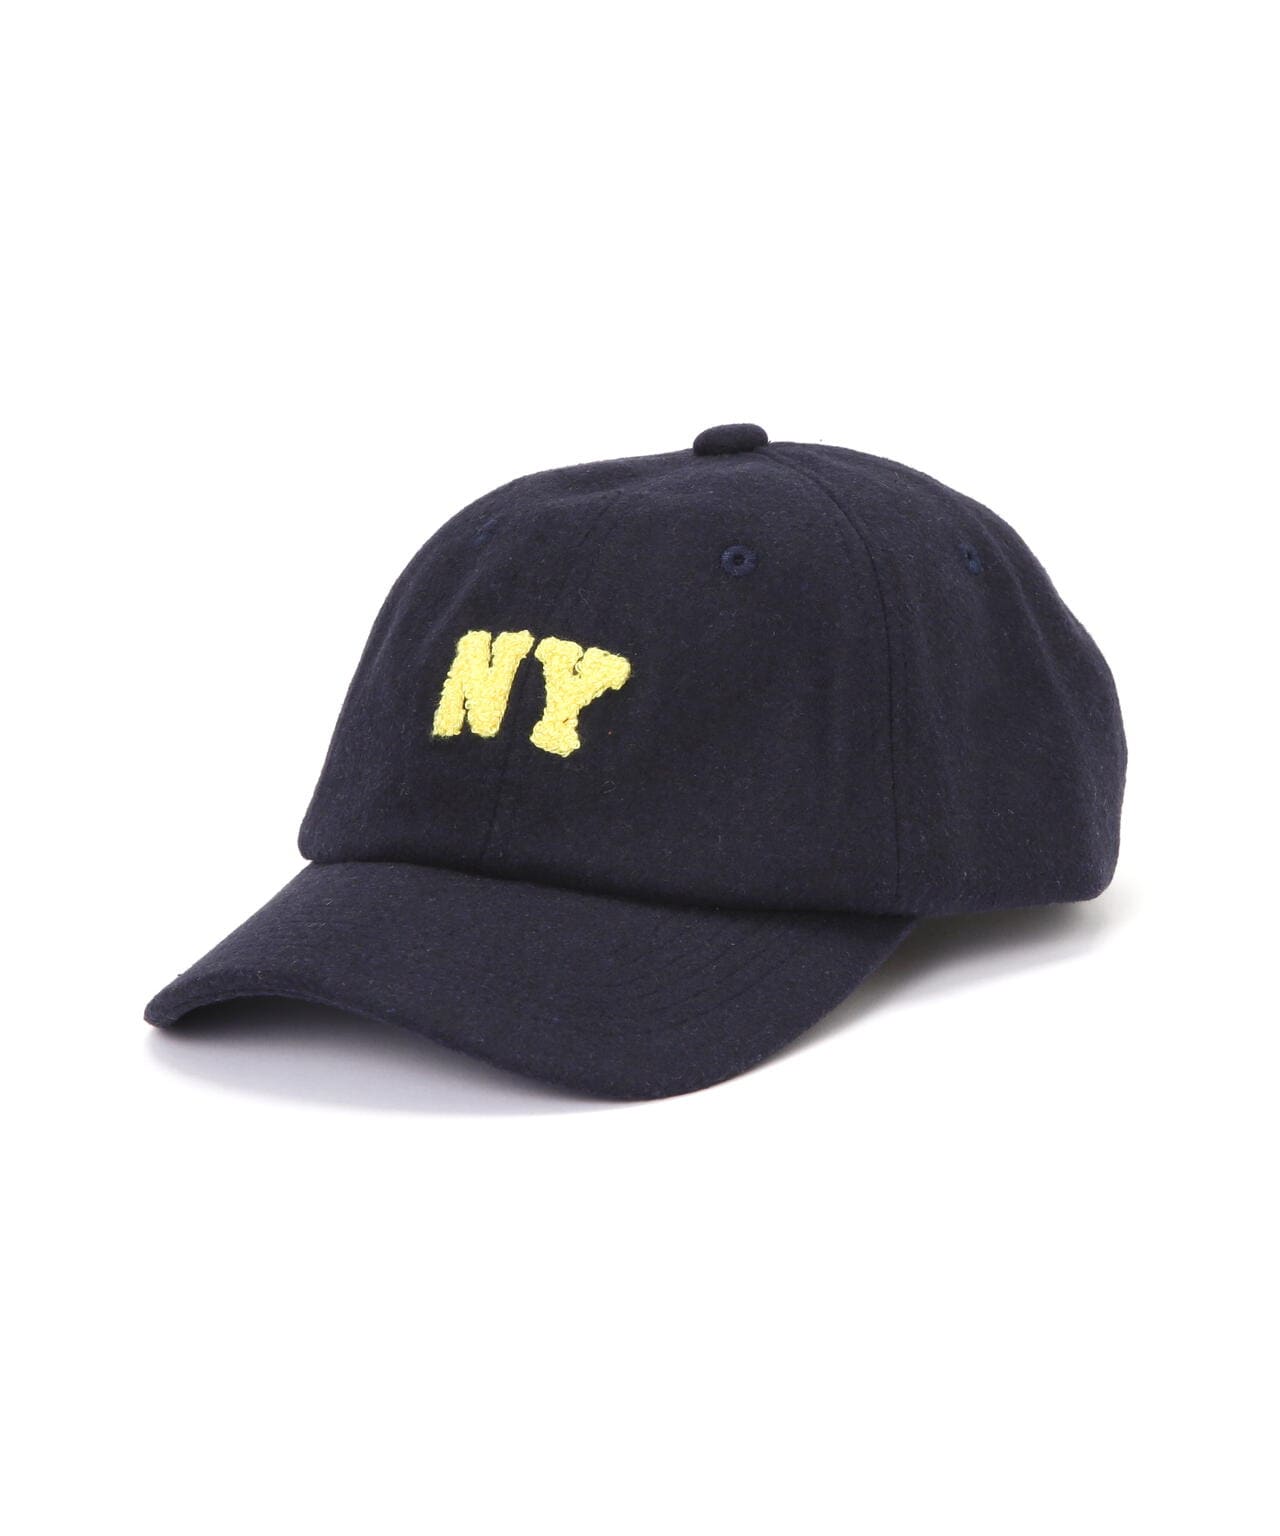 ≪直営店限定≫NY WOOL CAP/ ニューヨークウールキャップ